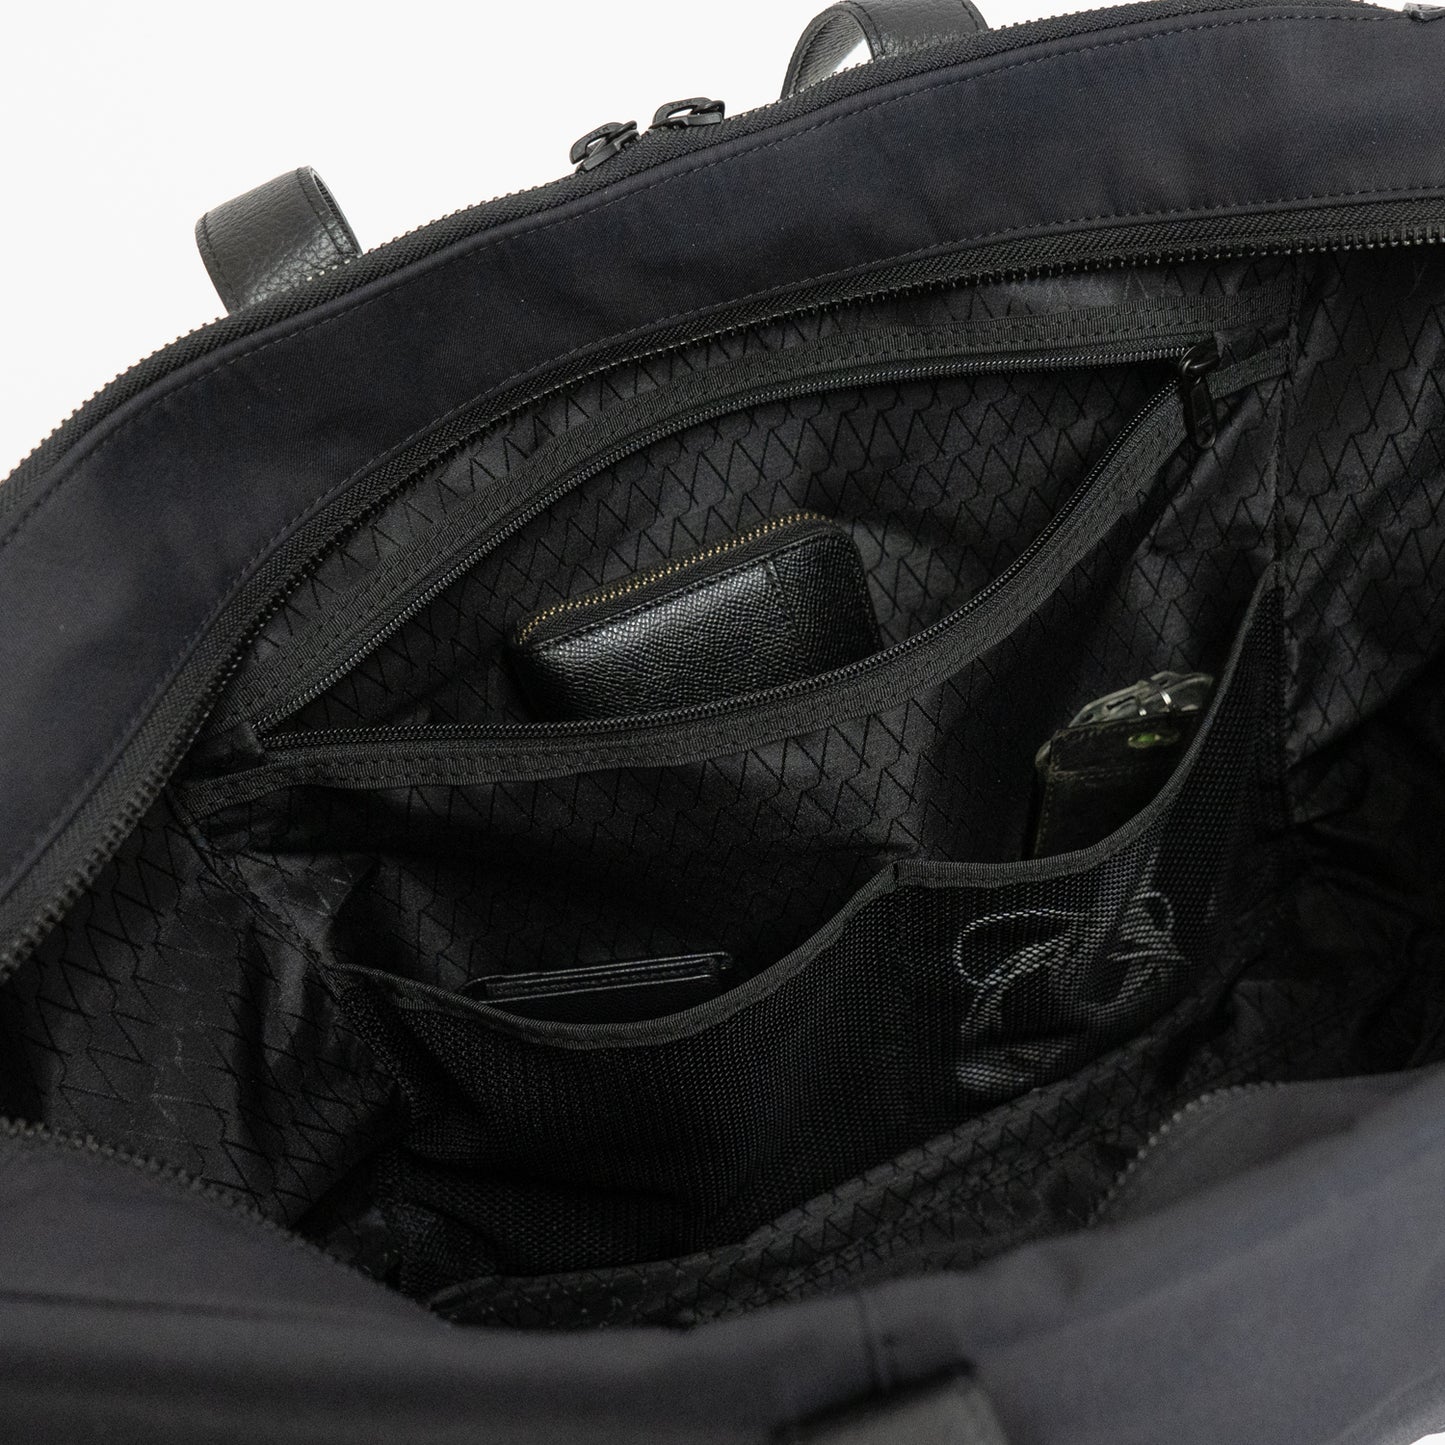 Lakeユーティリティトートバッグの内装には、イヤホン、常備薬など細かい荷物を収納できるメッシュポケットがついています。長財布はファスナーポケットに入れてセキュリティアップに。